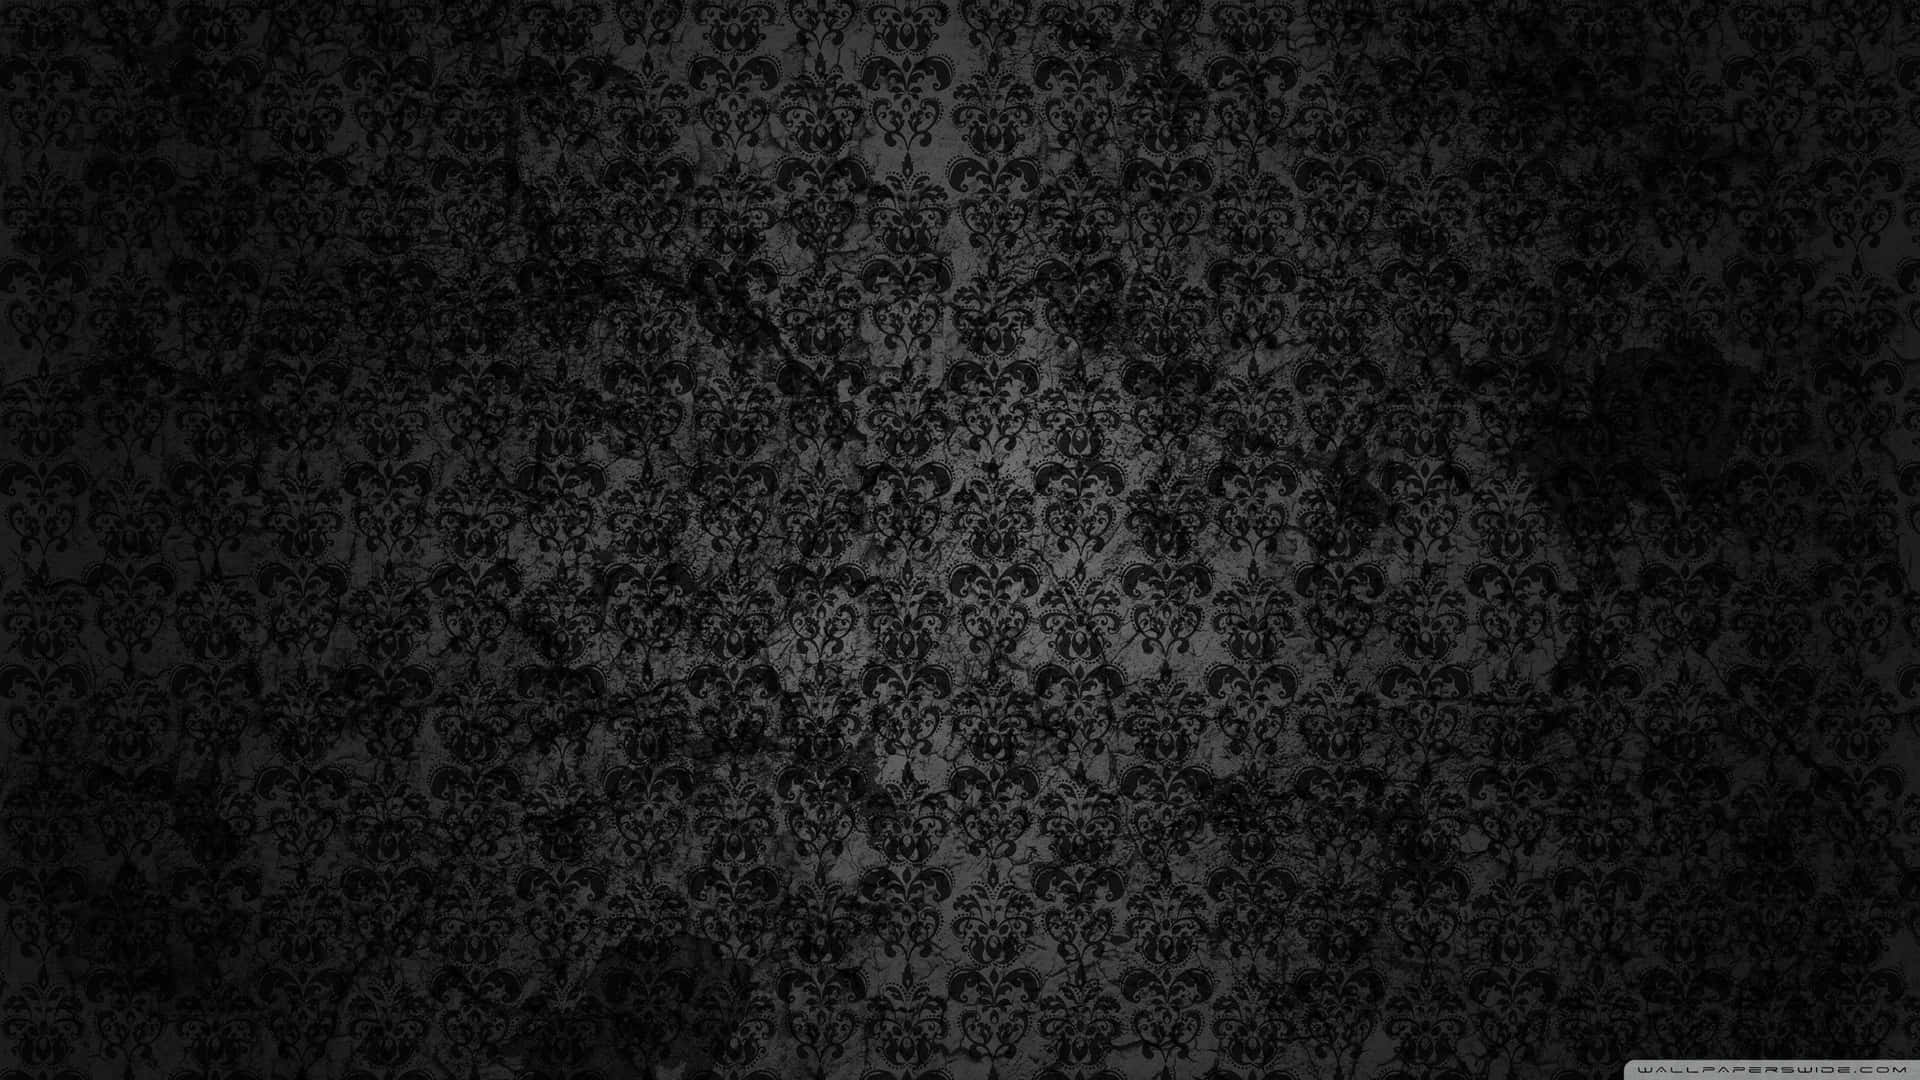 Wallpapers For Desktop Backgrounds Black Wallpapers For Desktop Backgrounds Black Wallpapers For Desktop Backgrounds Black Wallpapers For Desktop Backgrounds Black Wallpapers For Desktop Backgrounds Black Wallpapers